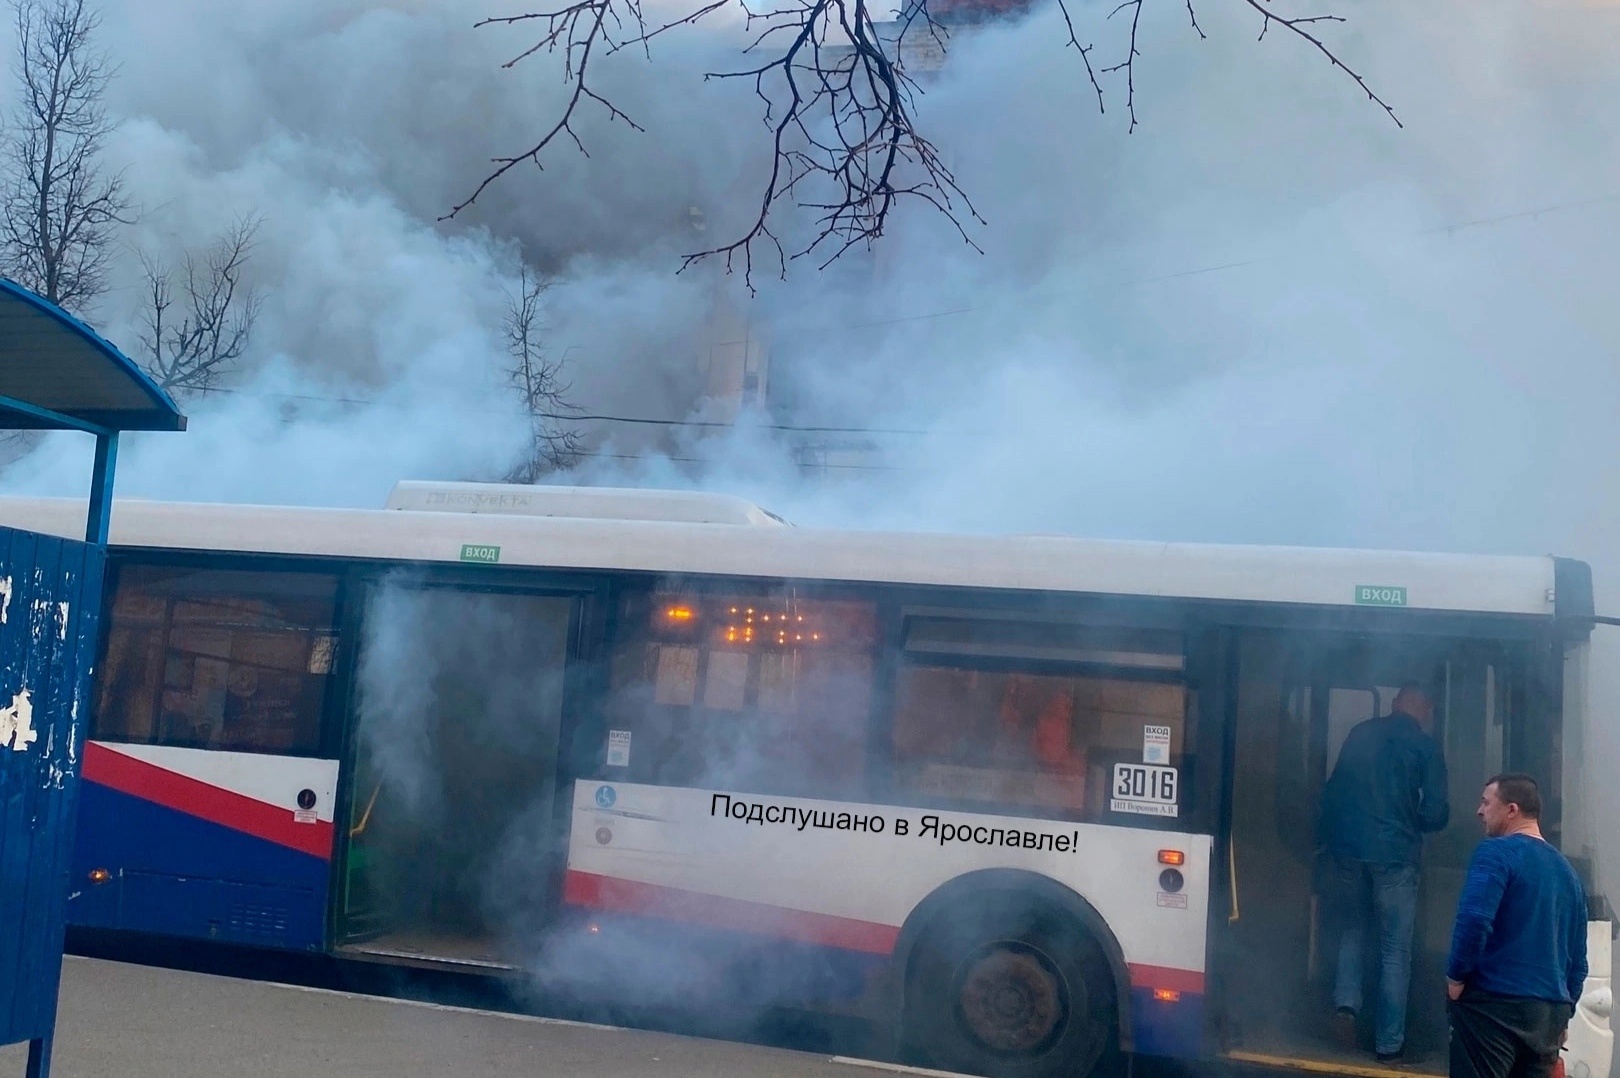 "Весь салон в дыму. Страшно": в Ярославле загорелся автобус с пассажирами  